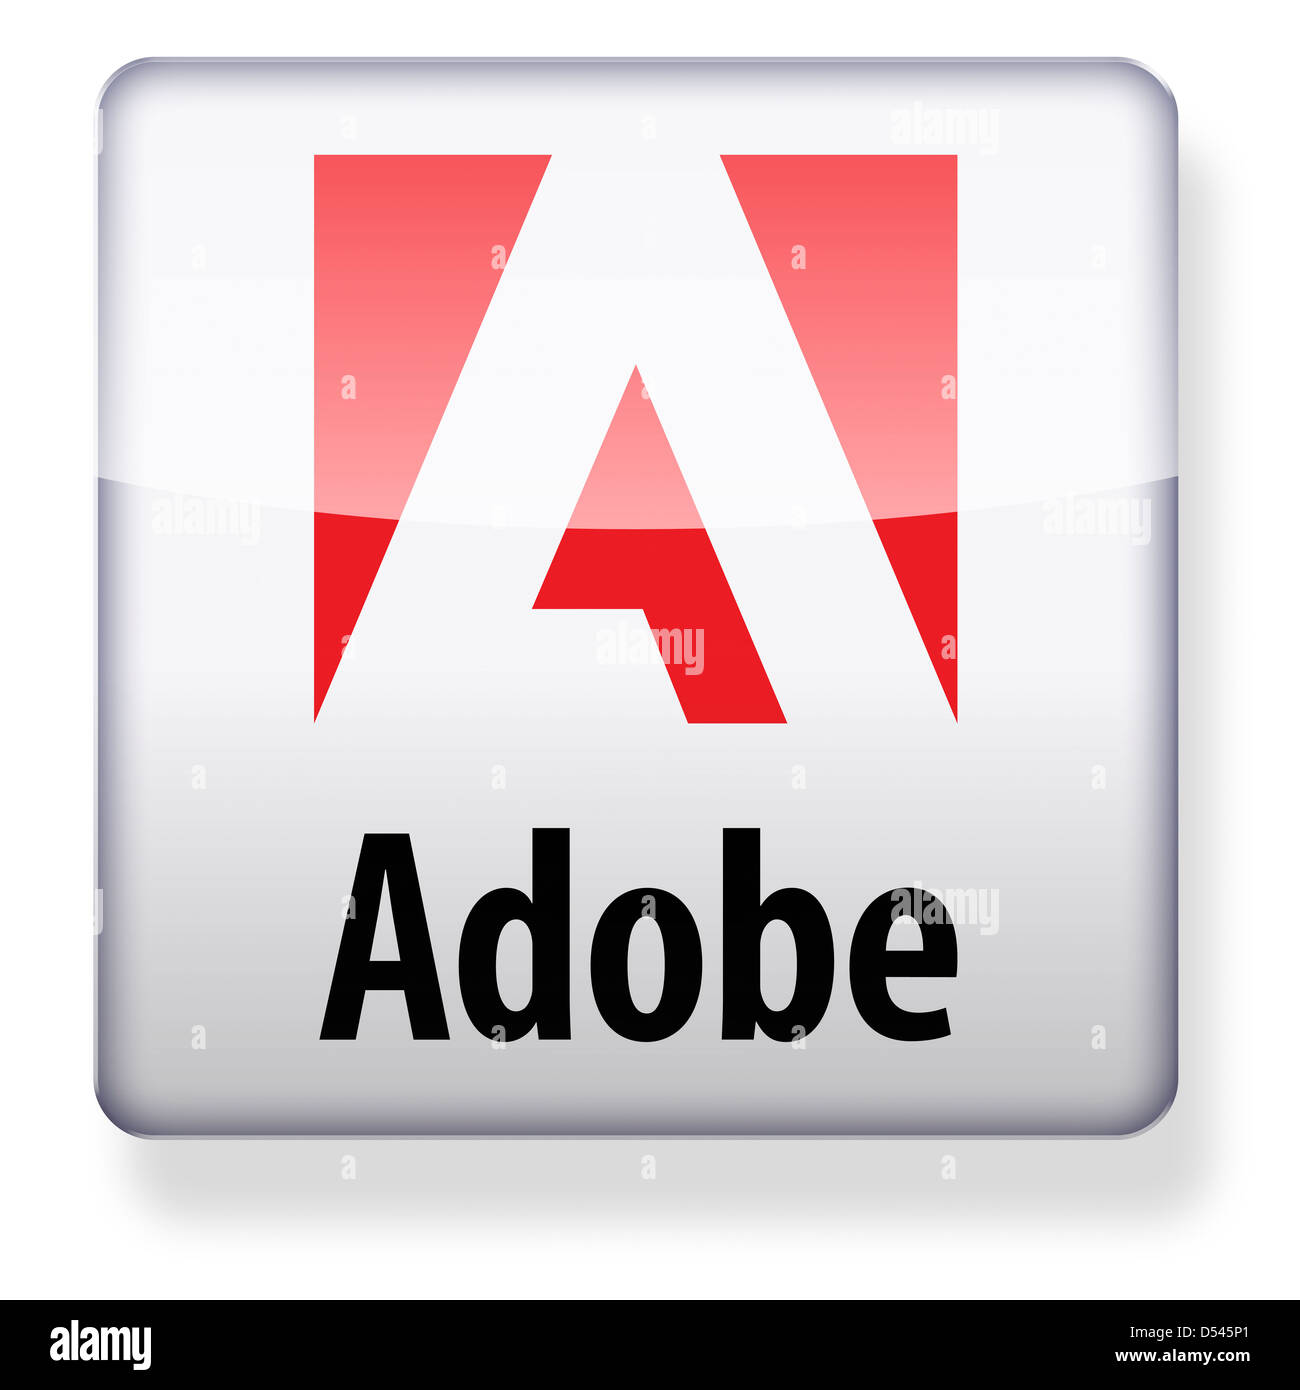 Logotipo de Adobe Systems como el icono de una aplicación. Trazado de recorte incluido. Foto de stock